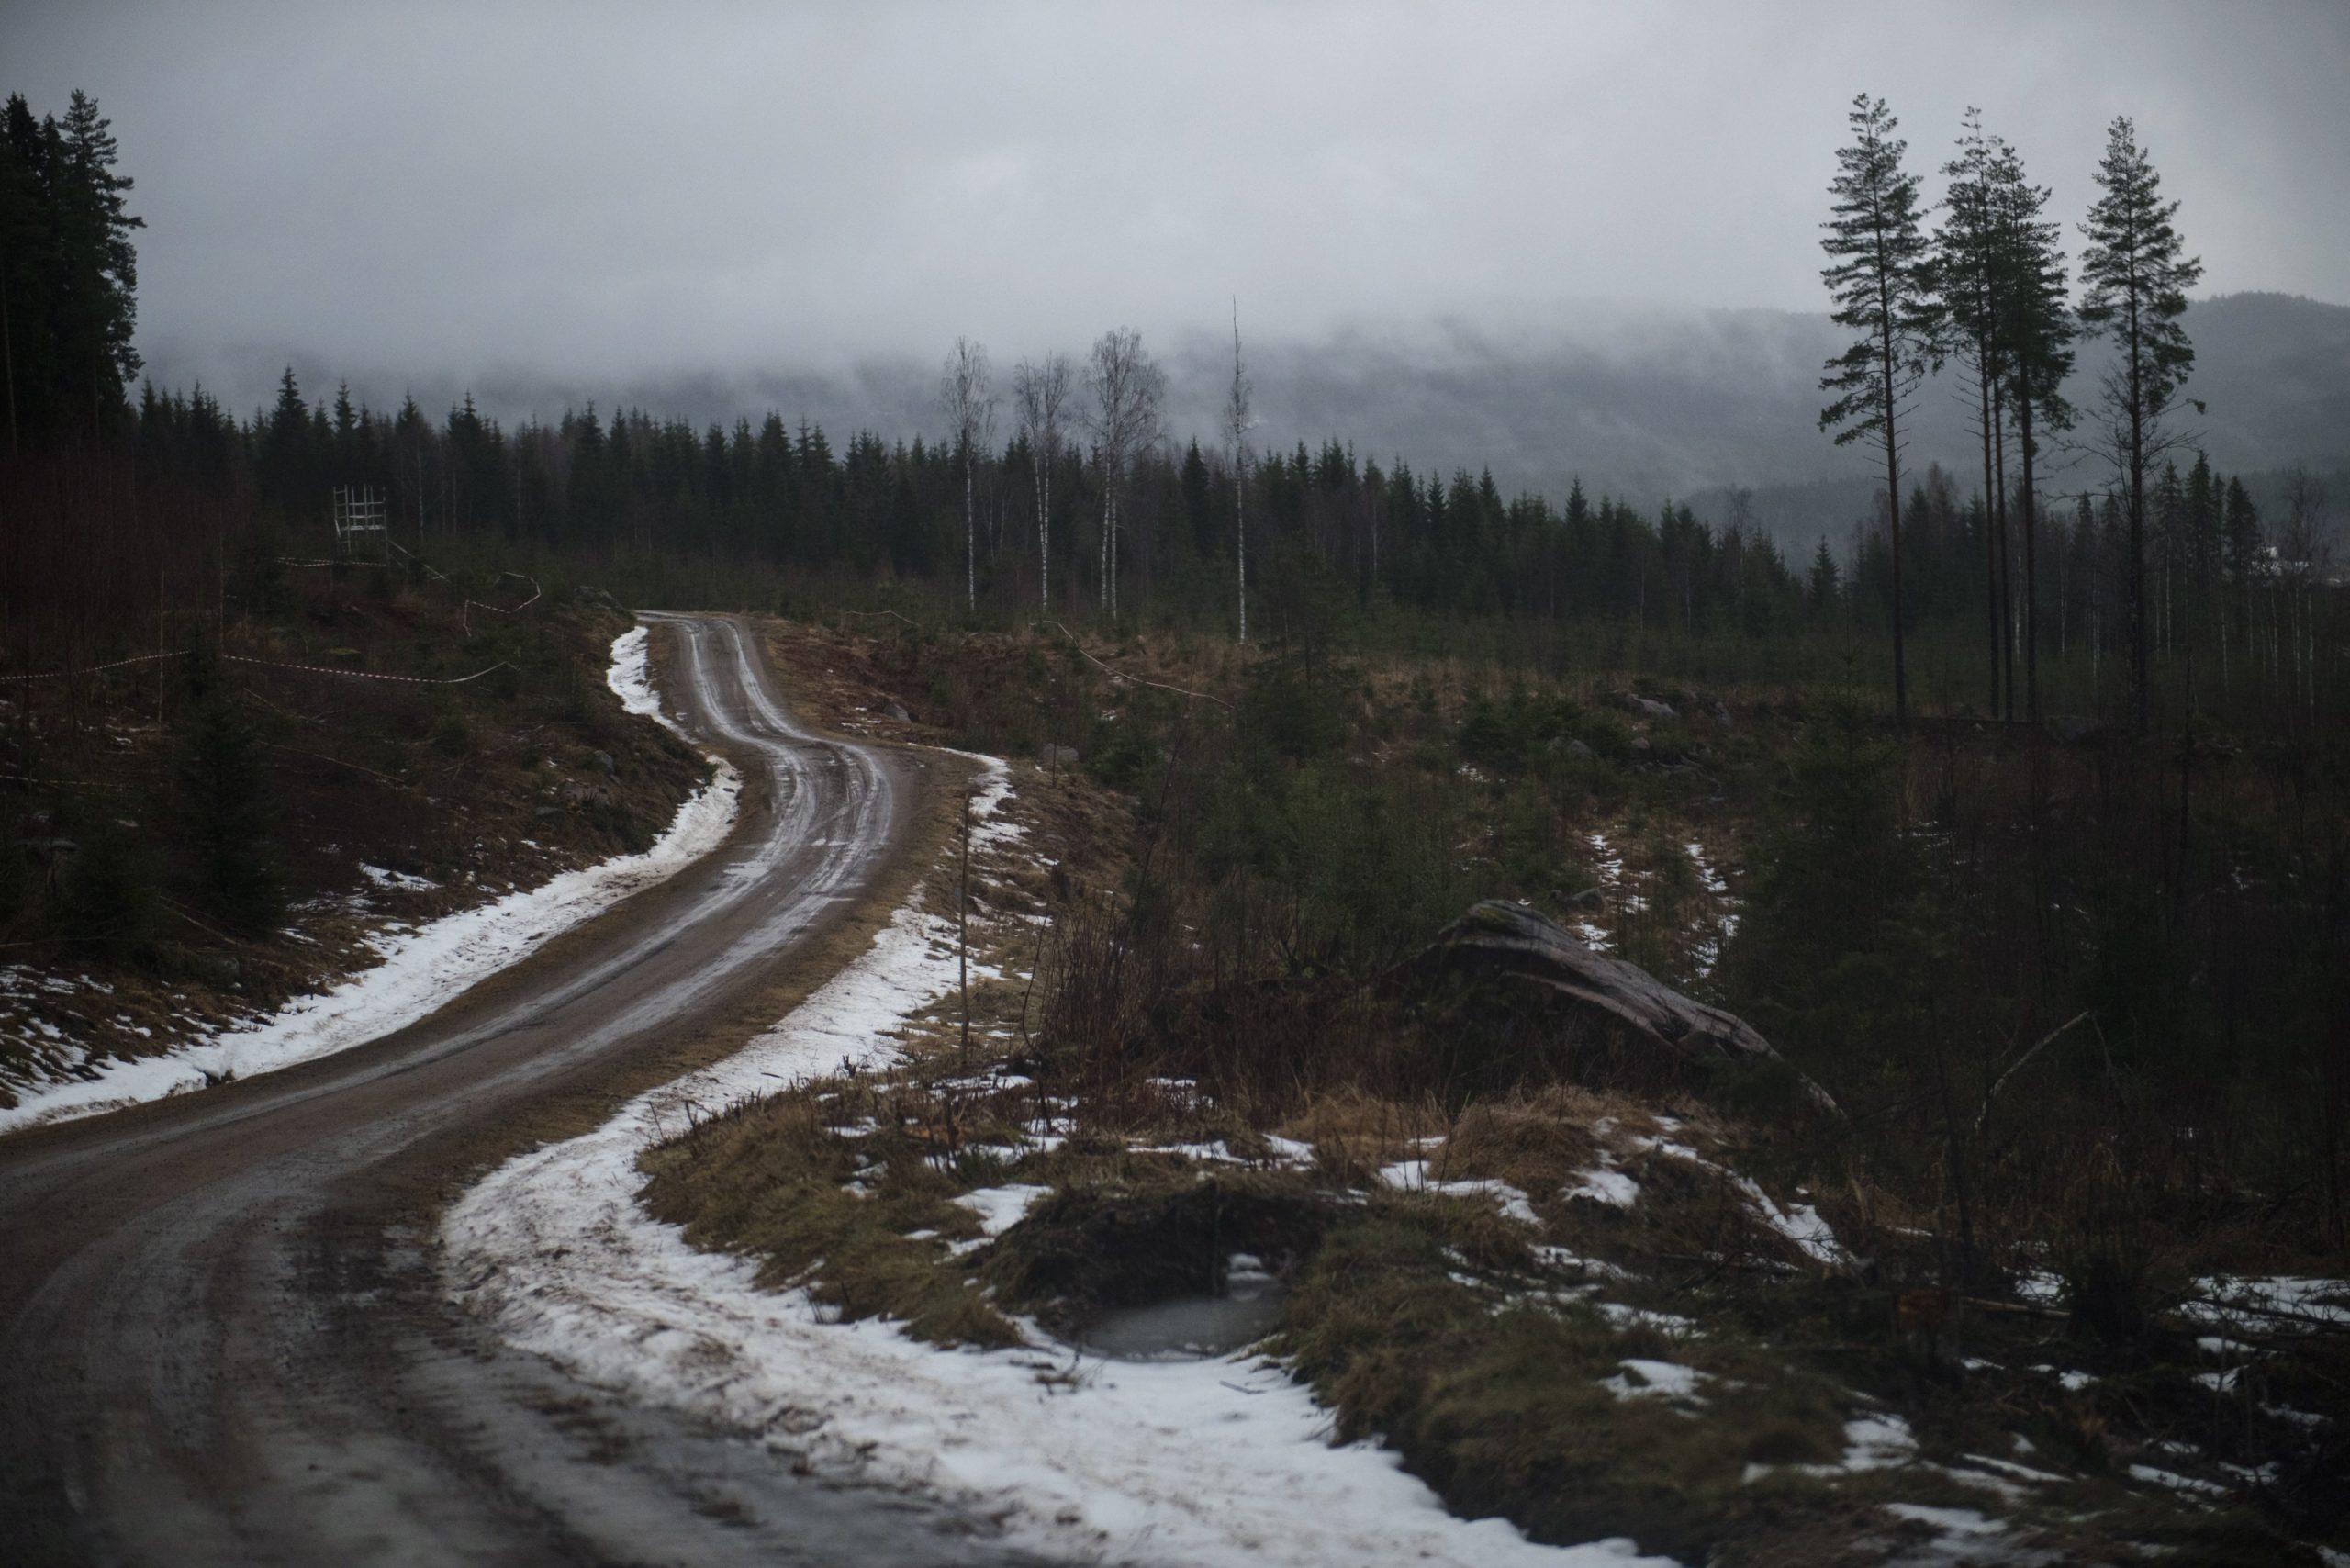 Rootsi 2020 - lumevaene talveralli